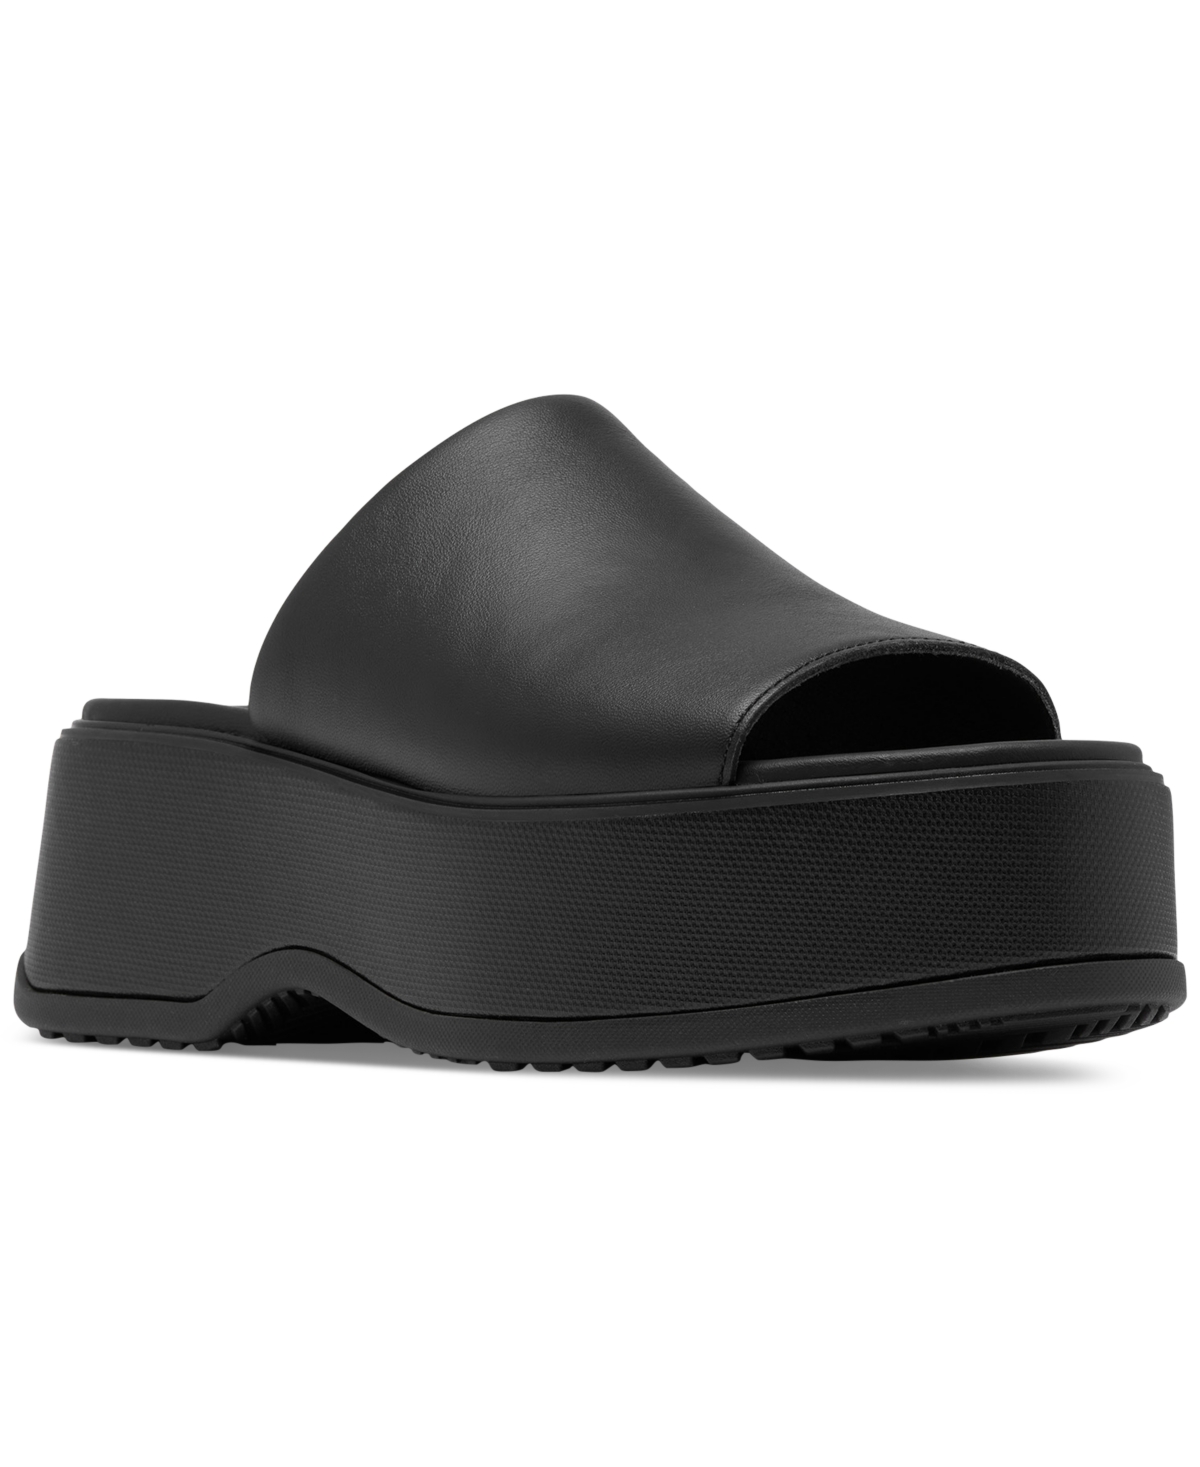 Women's Dayspring Platform Slide Sandals - Black, Black